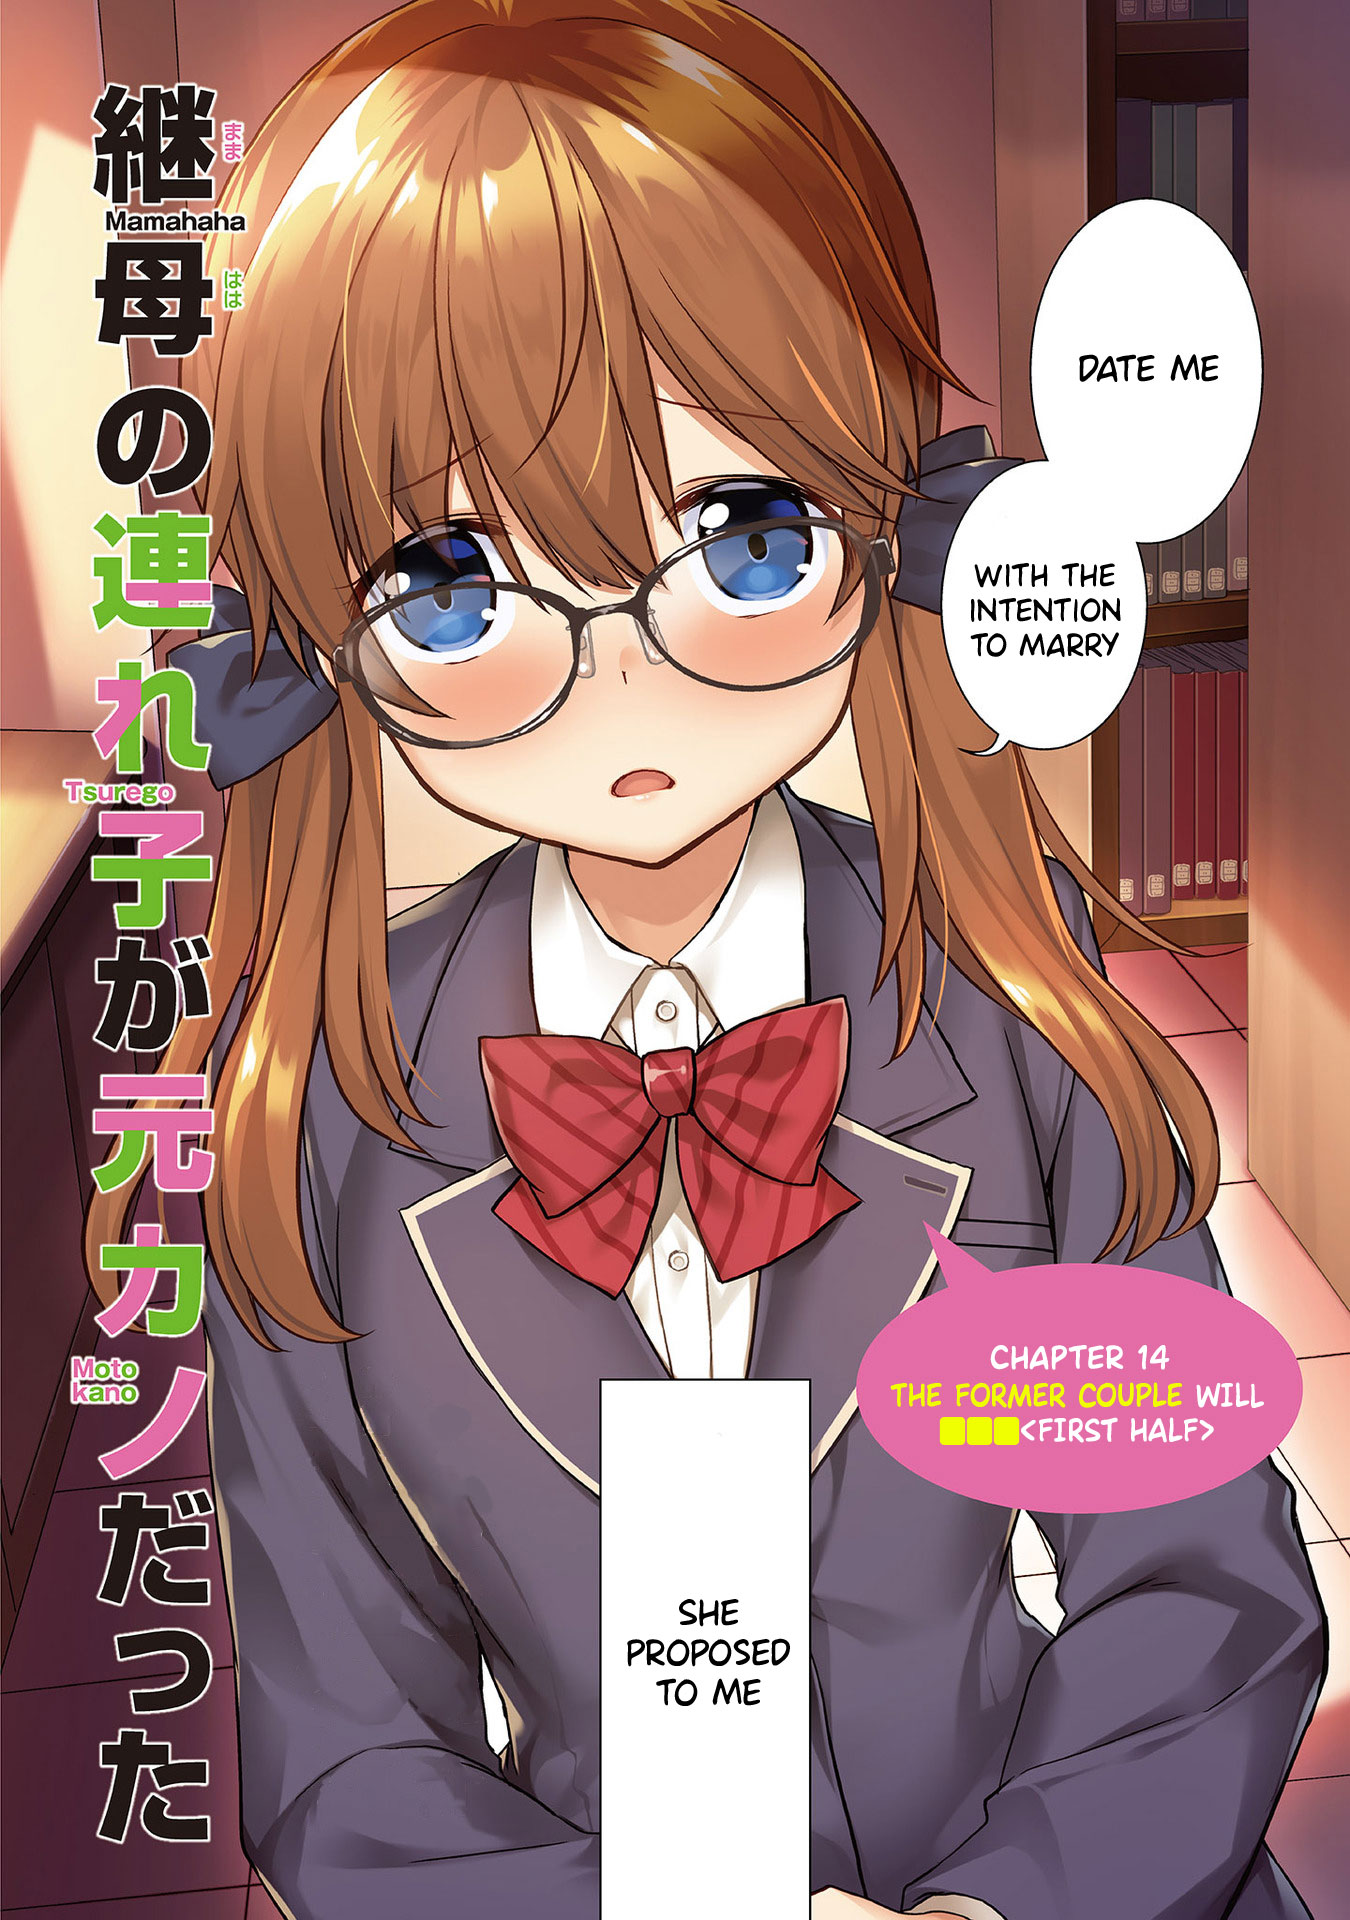 Mamahaha no Tsurego ga Moto Kano datta (Manga) - Chapter 14.1 - NeoSekai  Translations